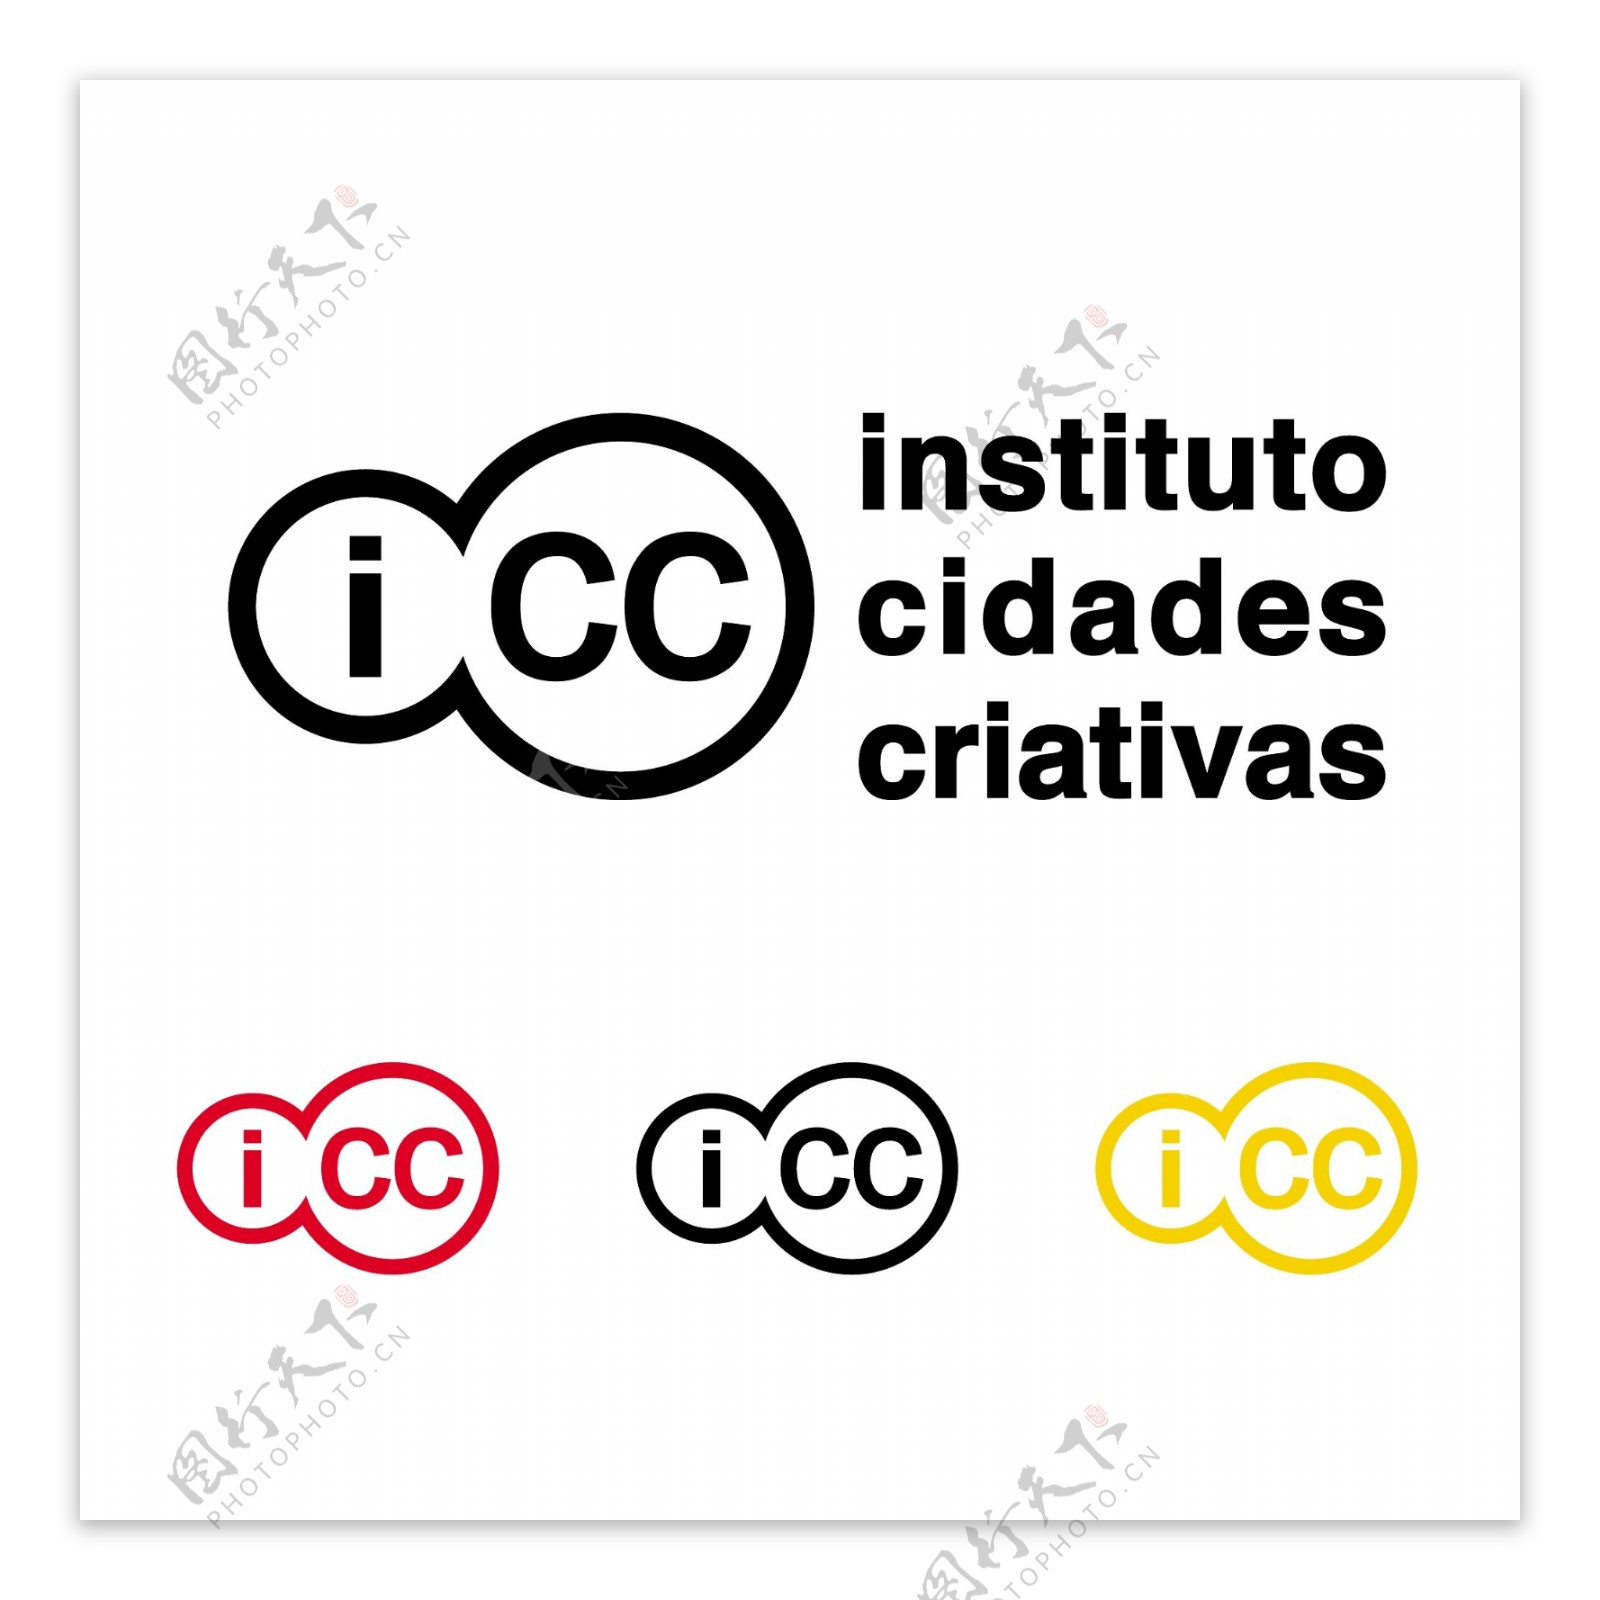 InstitutoCidadesCriativasICClogo设计欣赏InstitutoCidadesCriativasICC服务公司标志下载标志设计欣赏